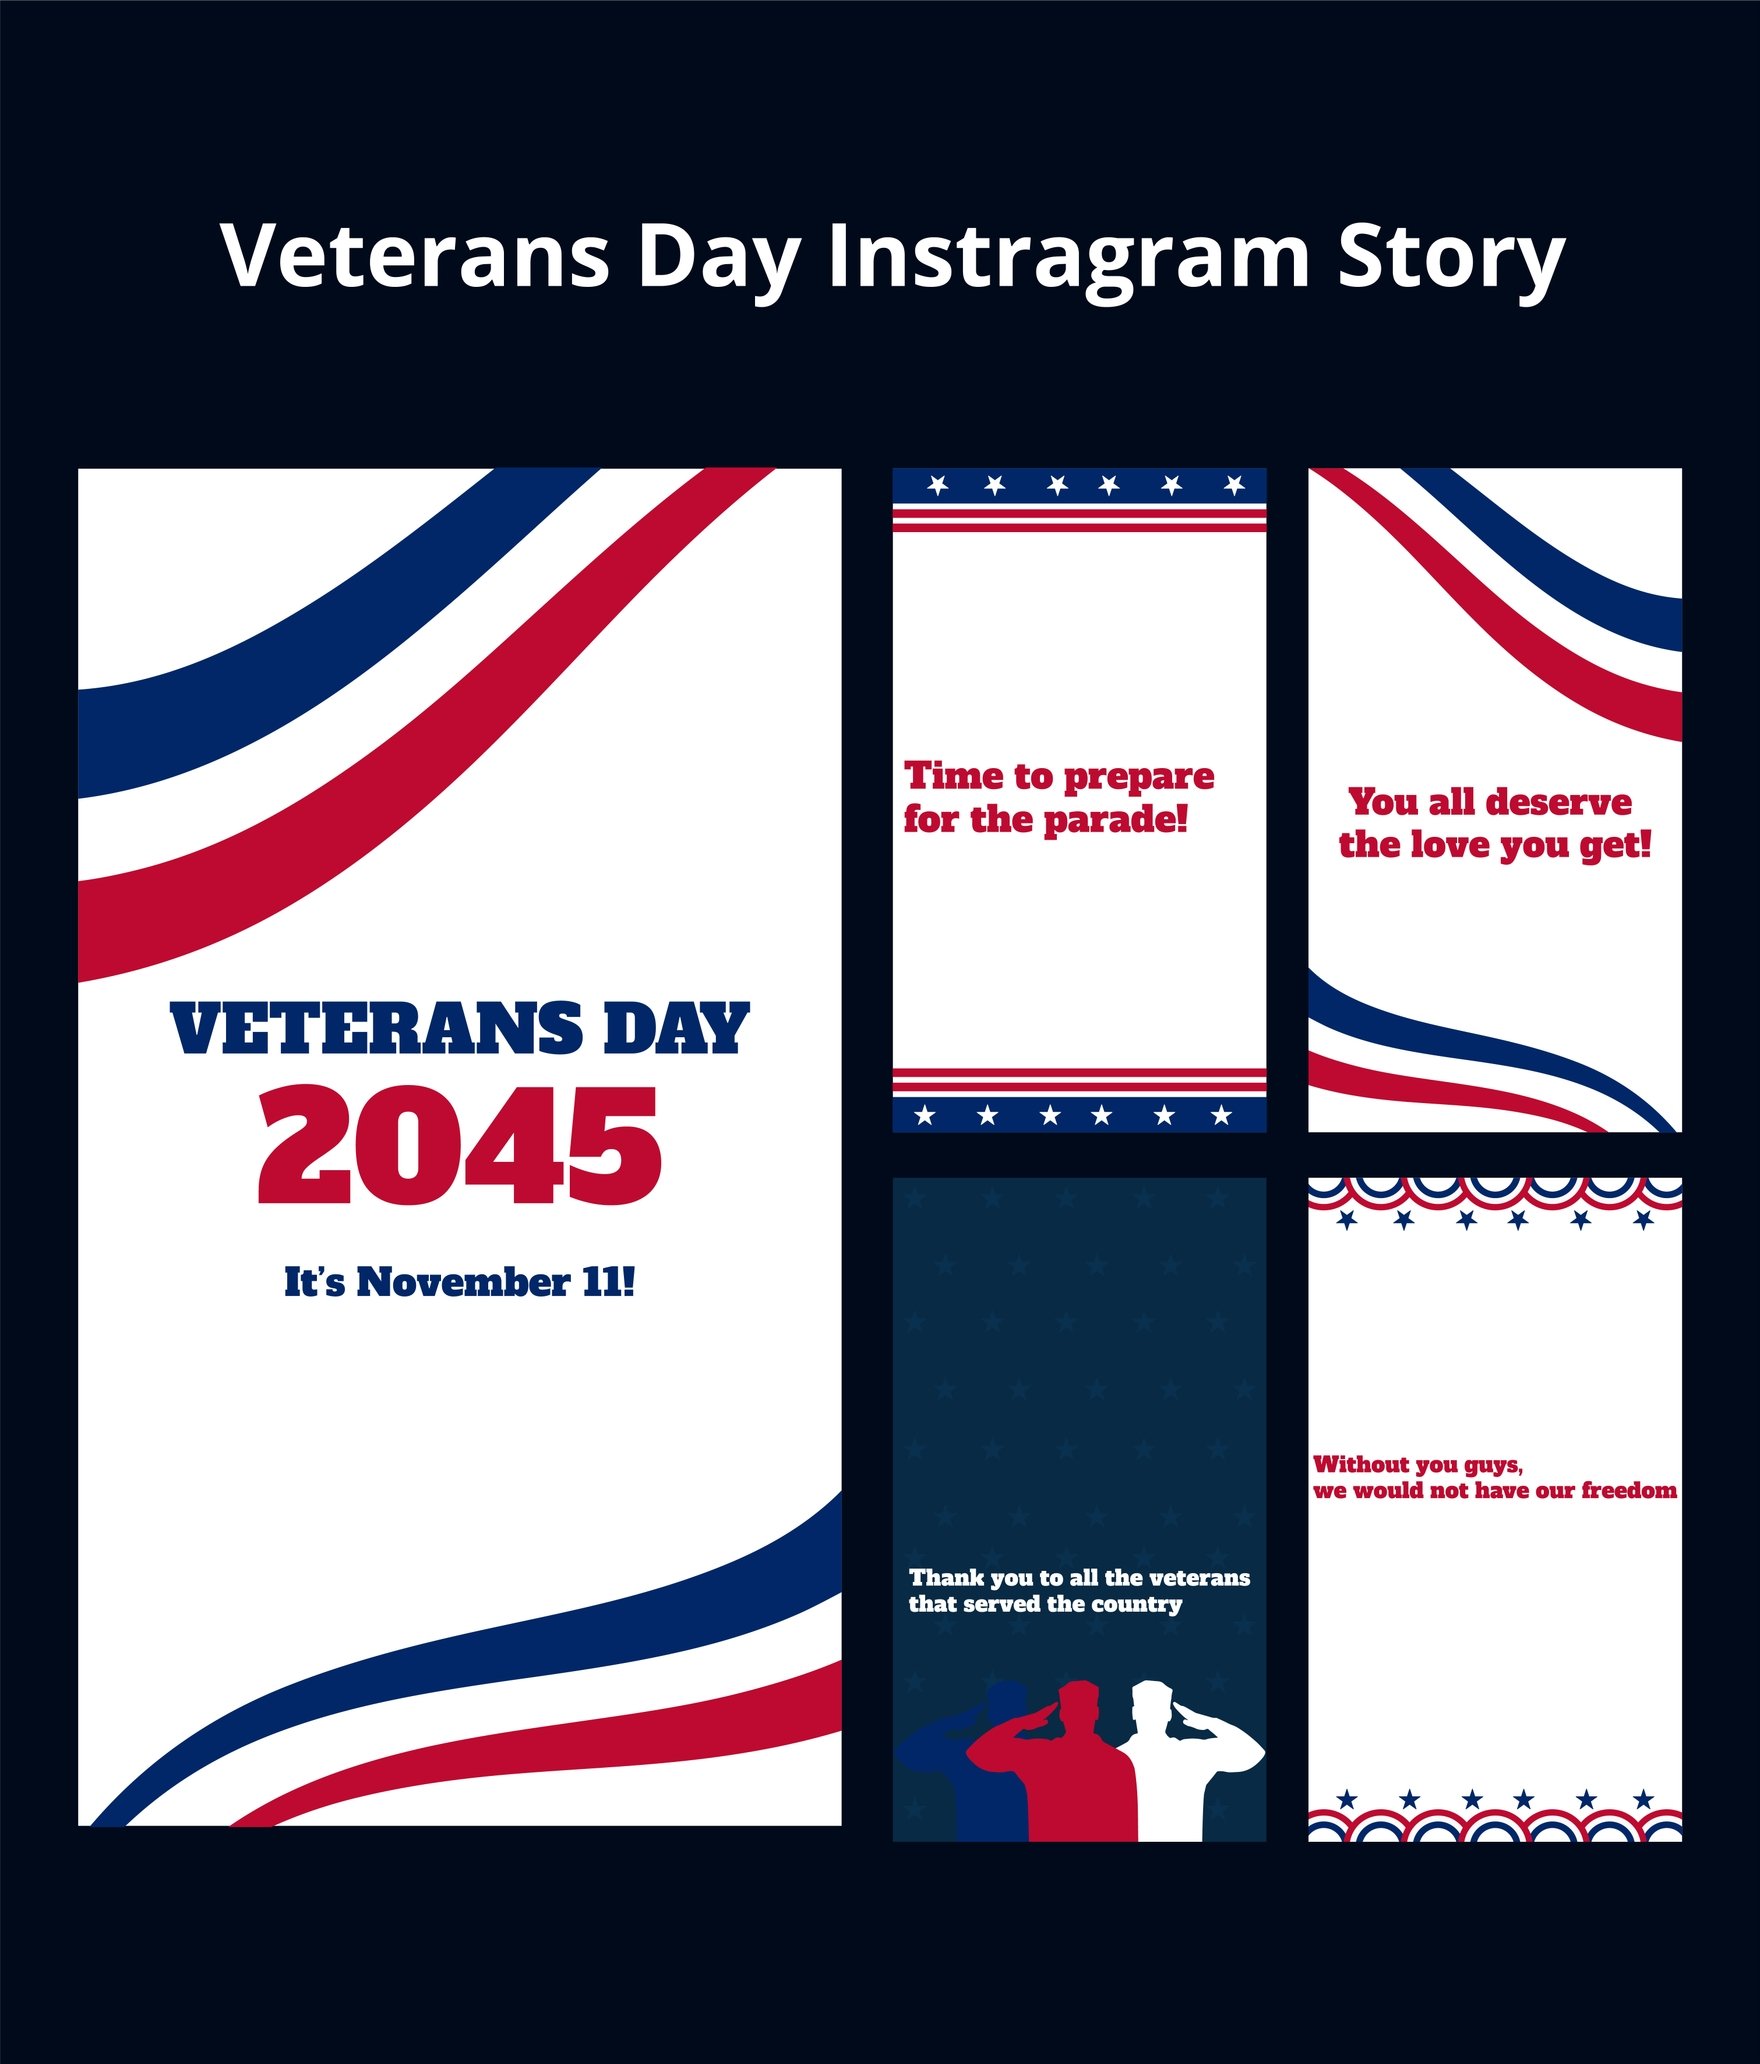 Veterans Day Instragram Story in Illustrator, PSD, EPS, SVG, JPG, PNG